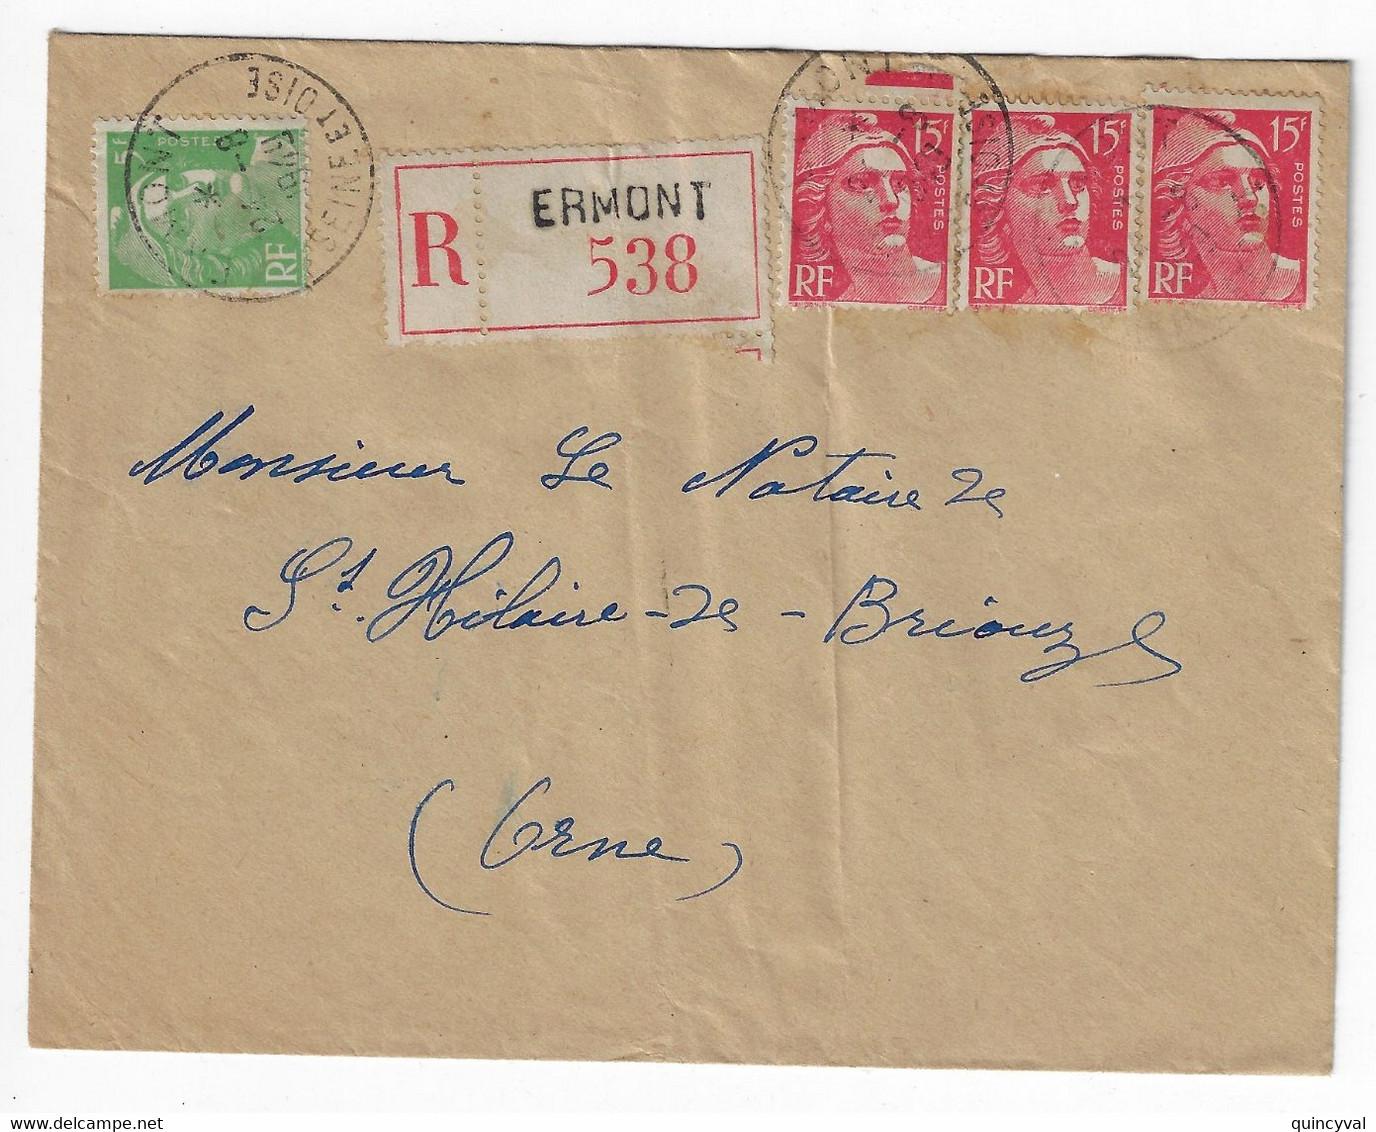 ERMONT Seine Et Oise Lettre Recommandée  5F Vert 15 F Gandon Etiquette Yv 813 809 Ob 24 8 1949 - Lettres & Documents